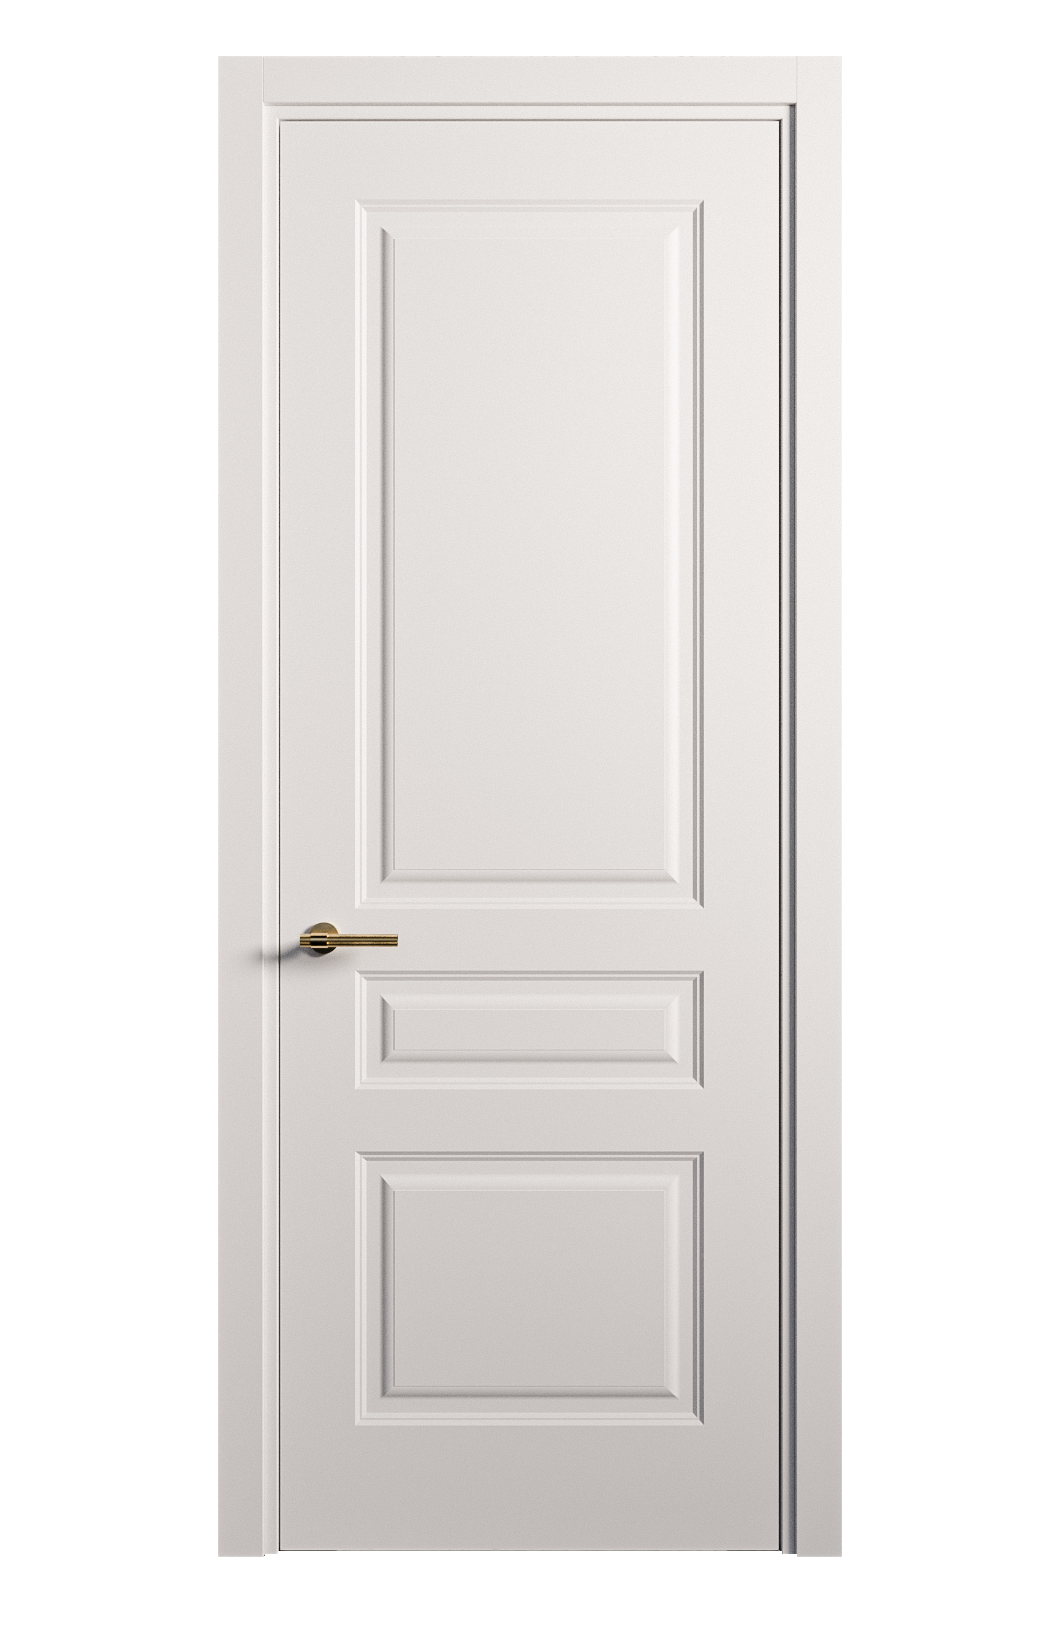 Межкомнатная дверь Вита-2 глухая эмаль ral 9003 26400